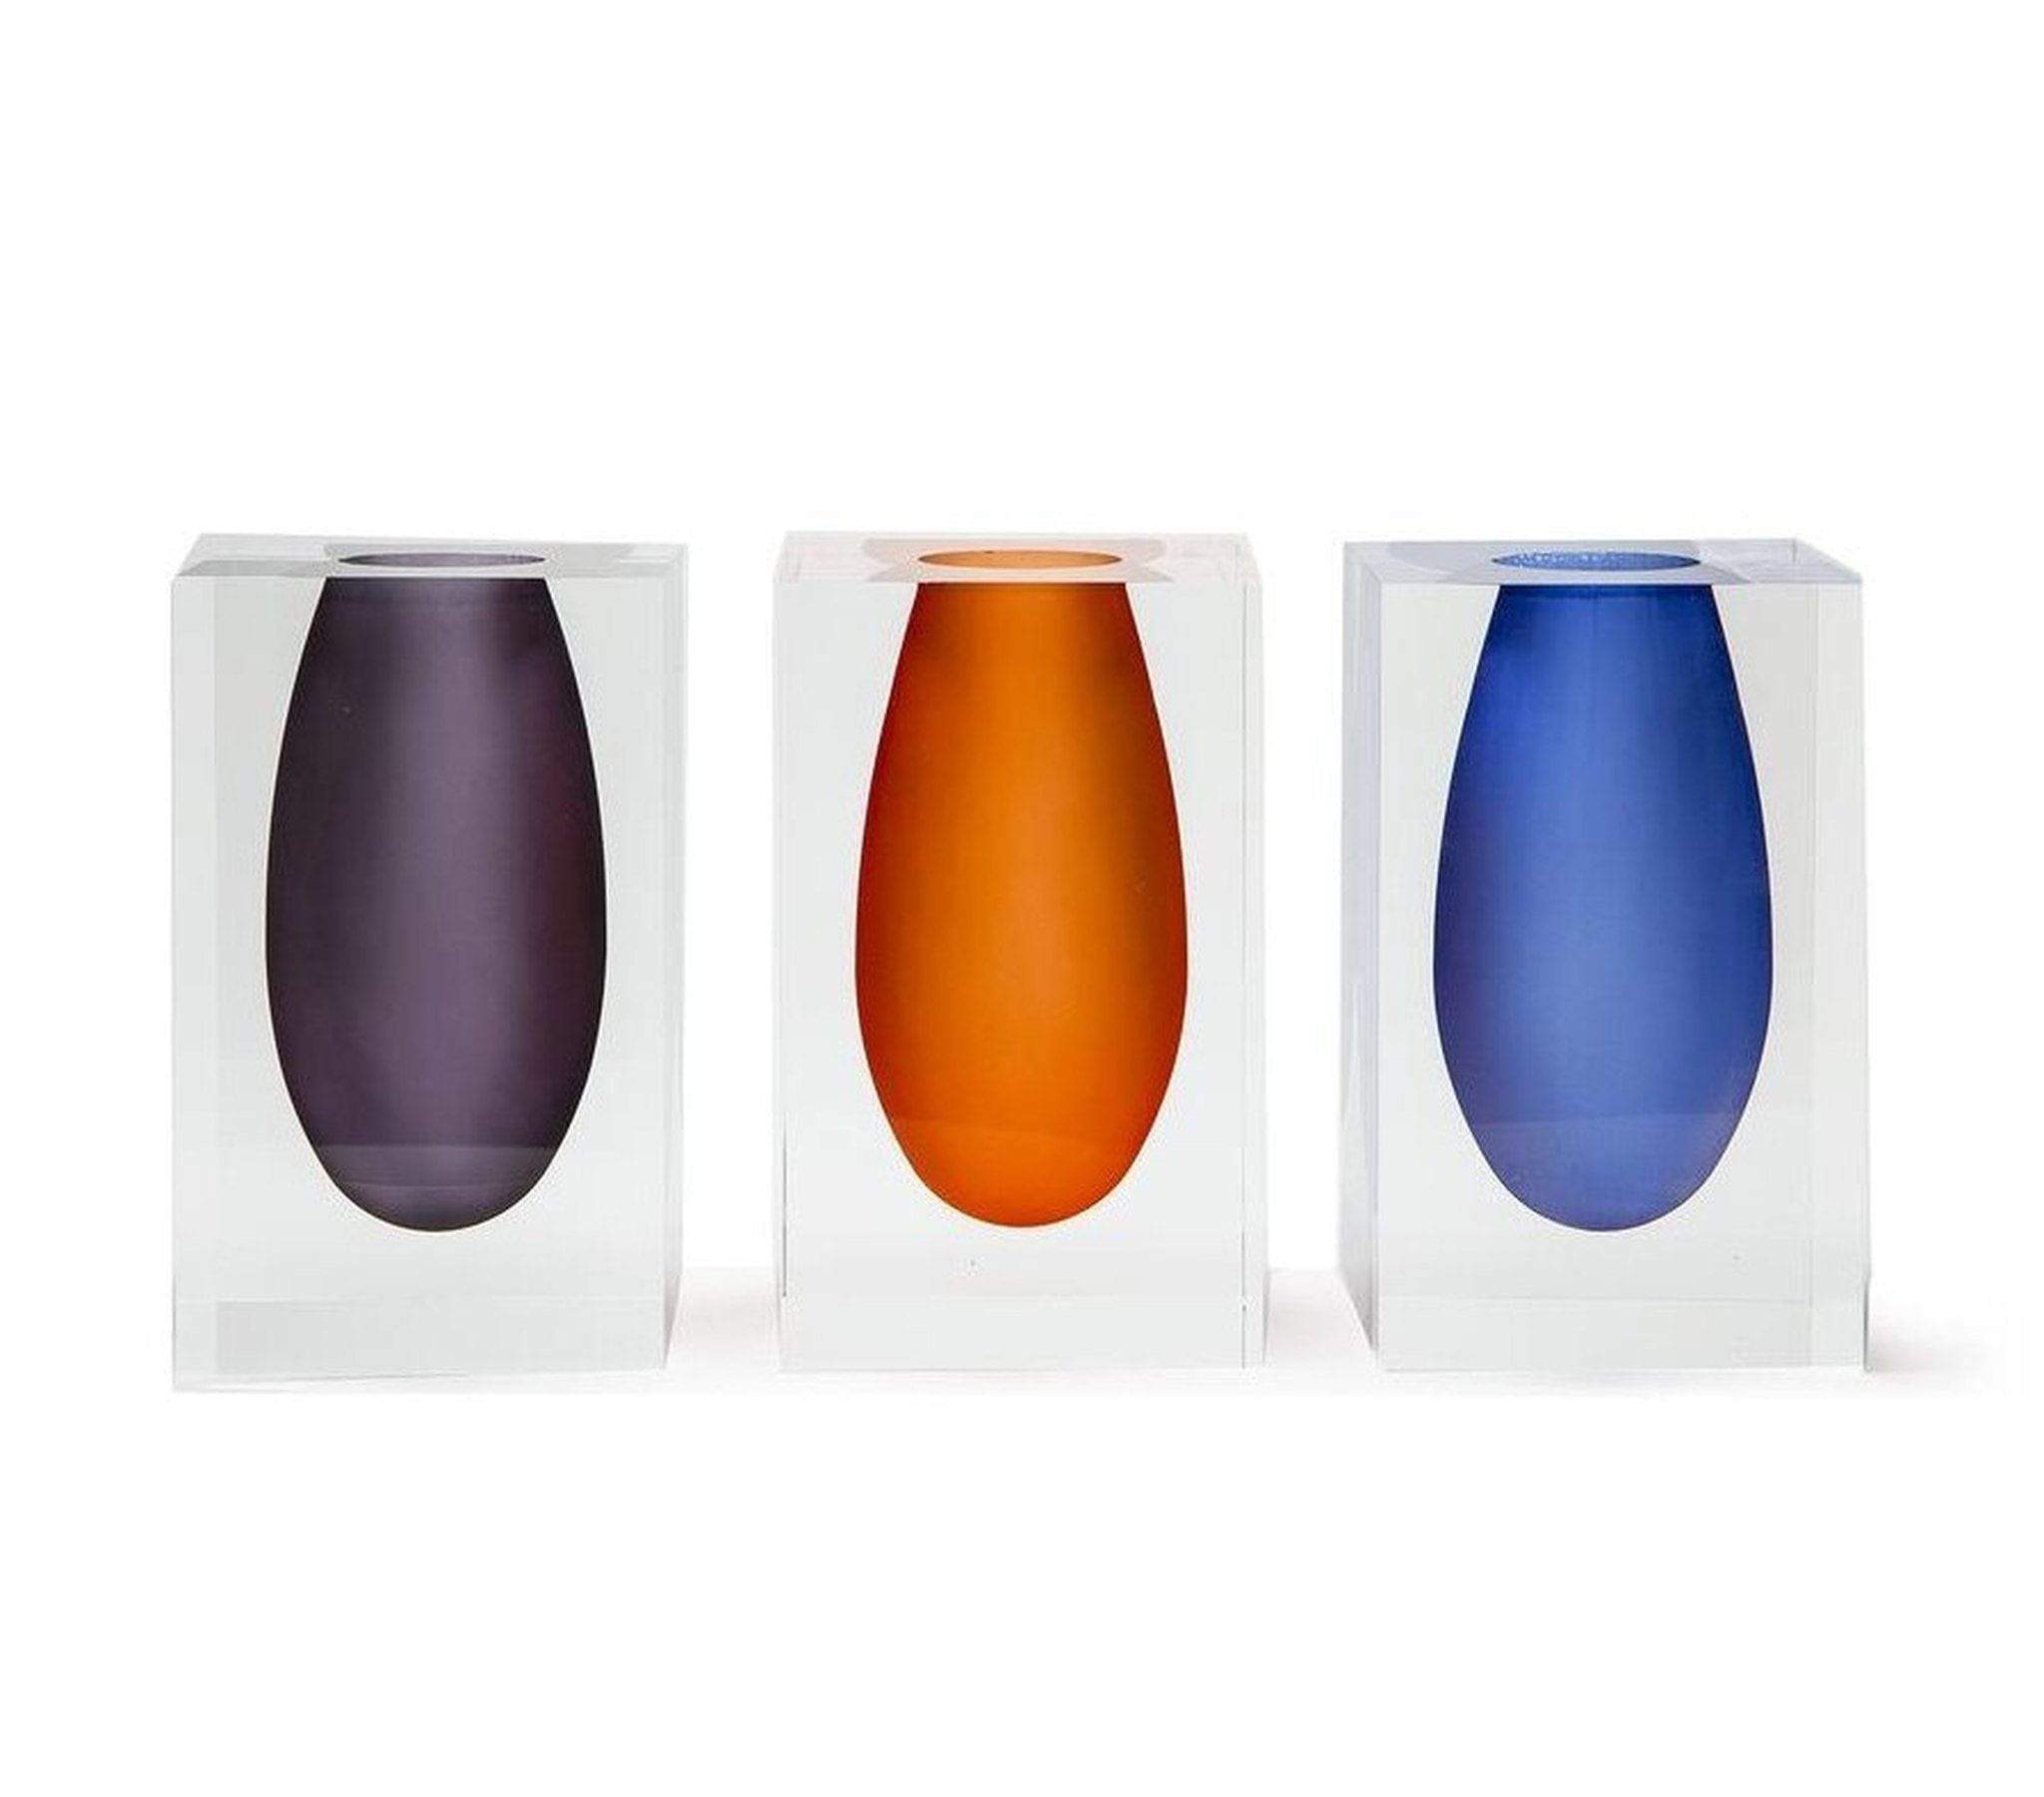 Tizo Design Lucite Block Bud Vase - Bright Blue